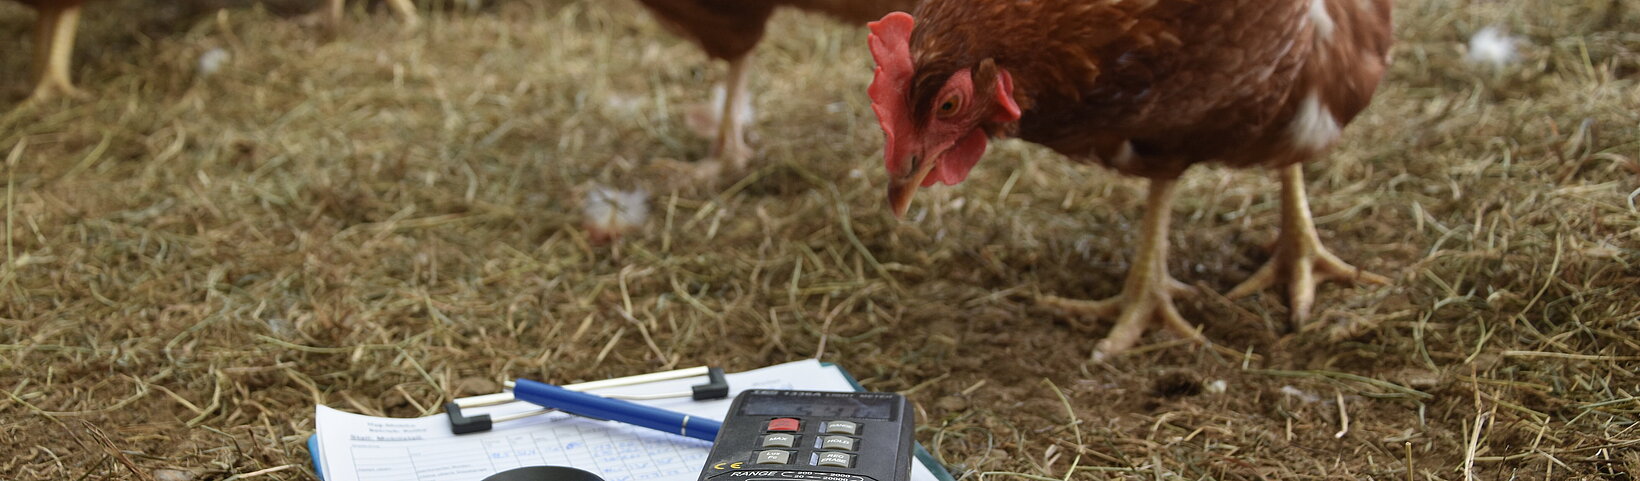 Foto: Ein Huhn neigt den Kopf neugierig einem im Stroh liegenden Klemmbrett mit Papier, einem Kugelschreiber und einem Messgerät entgegen. 